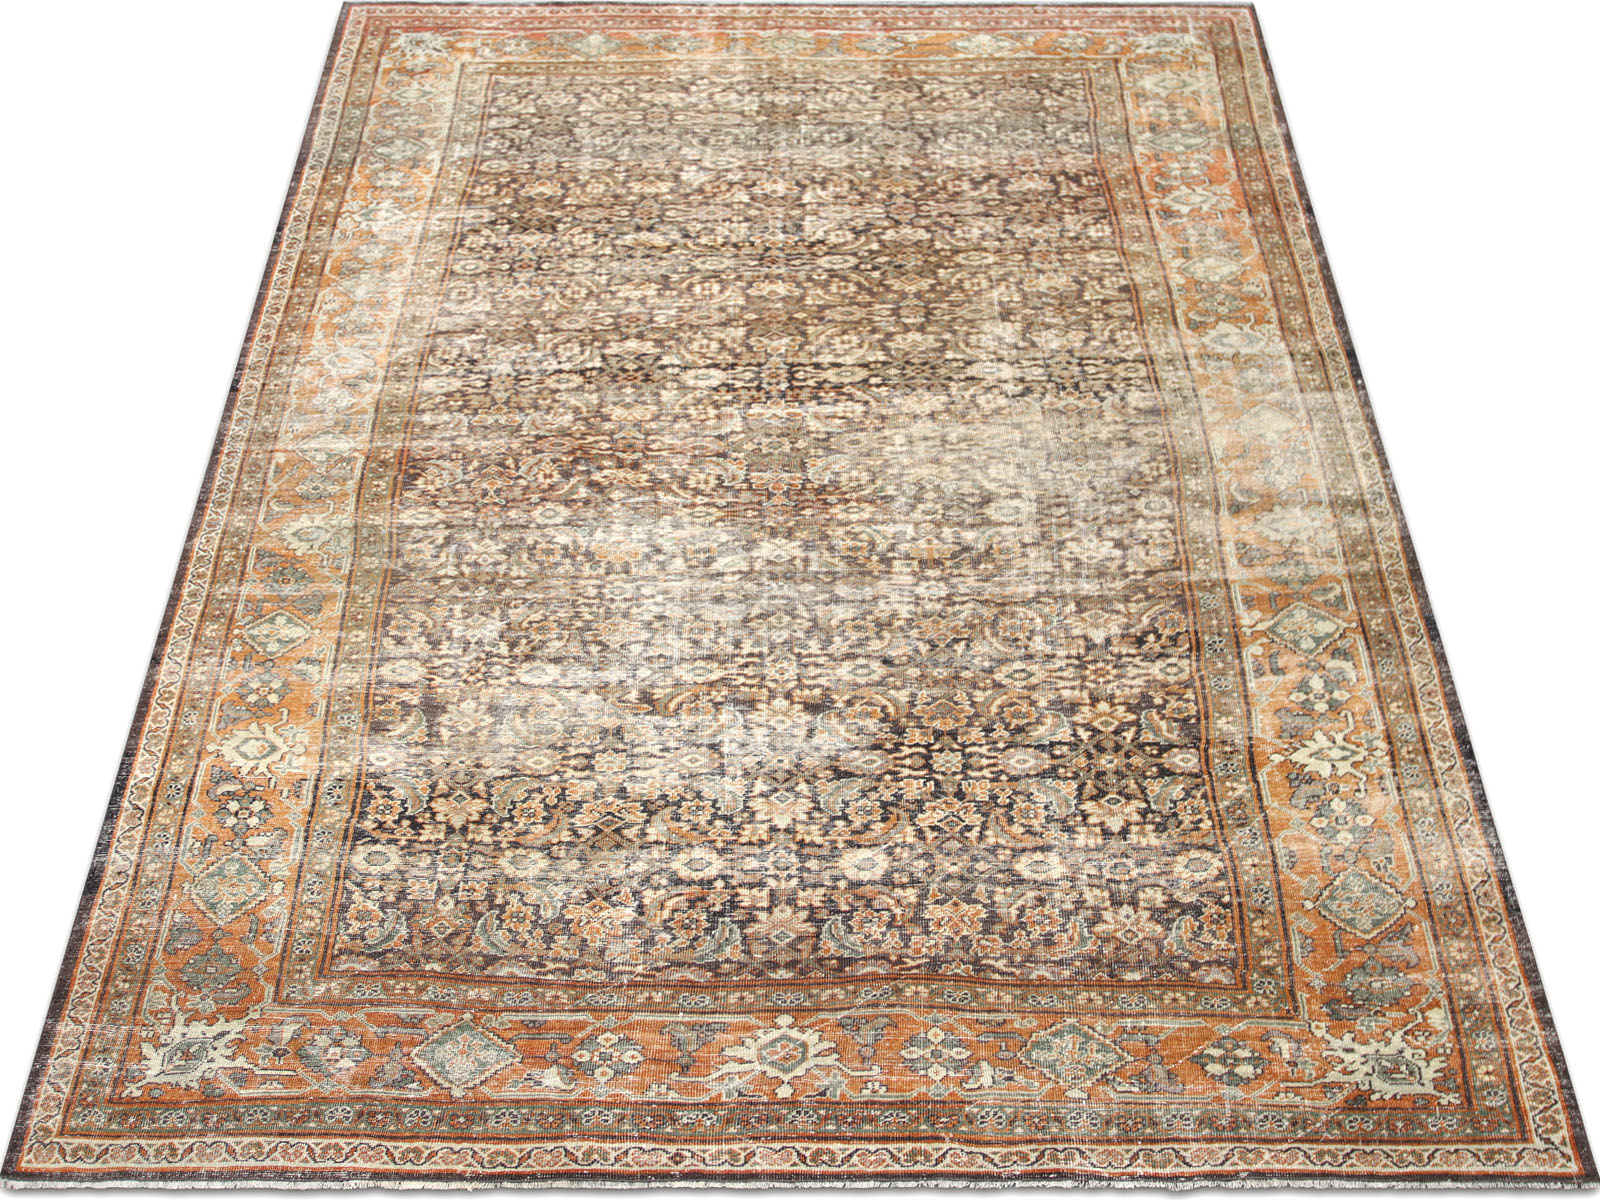 Semi Antique Persian Mahal Rug - 8'3" x 13'4"